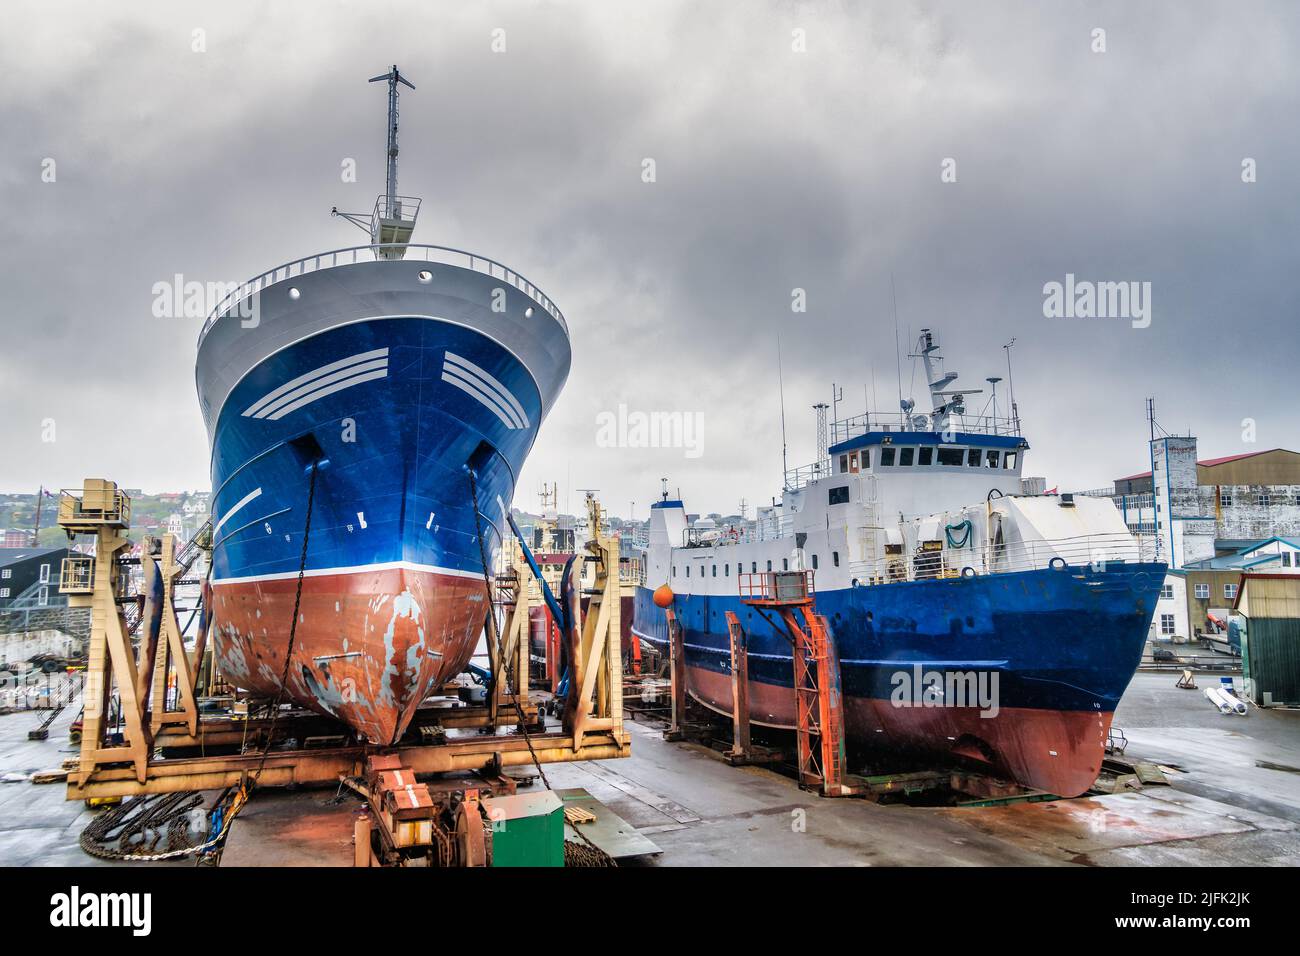 Astillero de Torshavn en el puerto, Islas Feroe Foto de stock